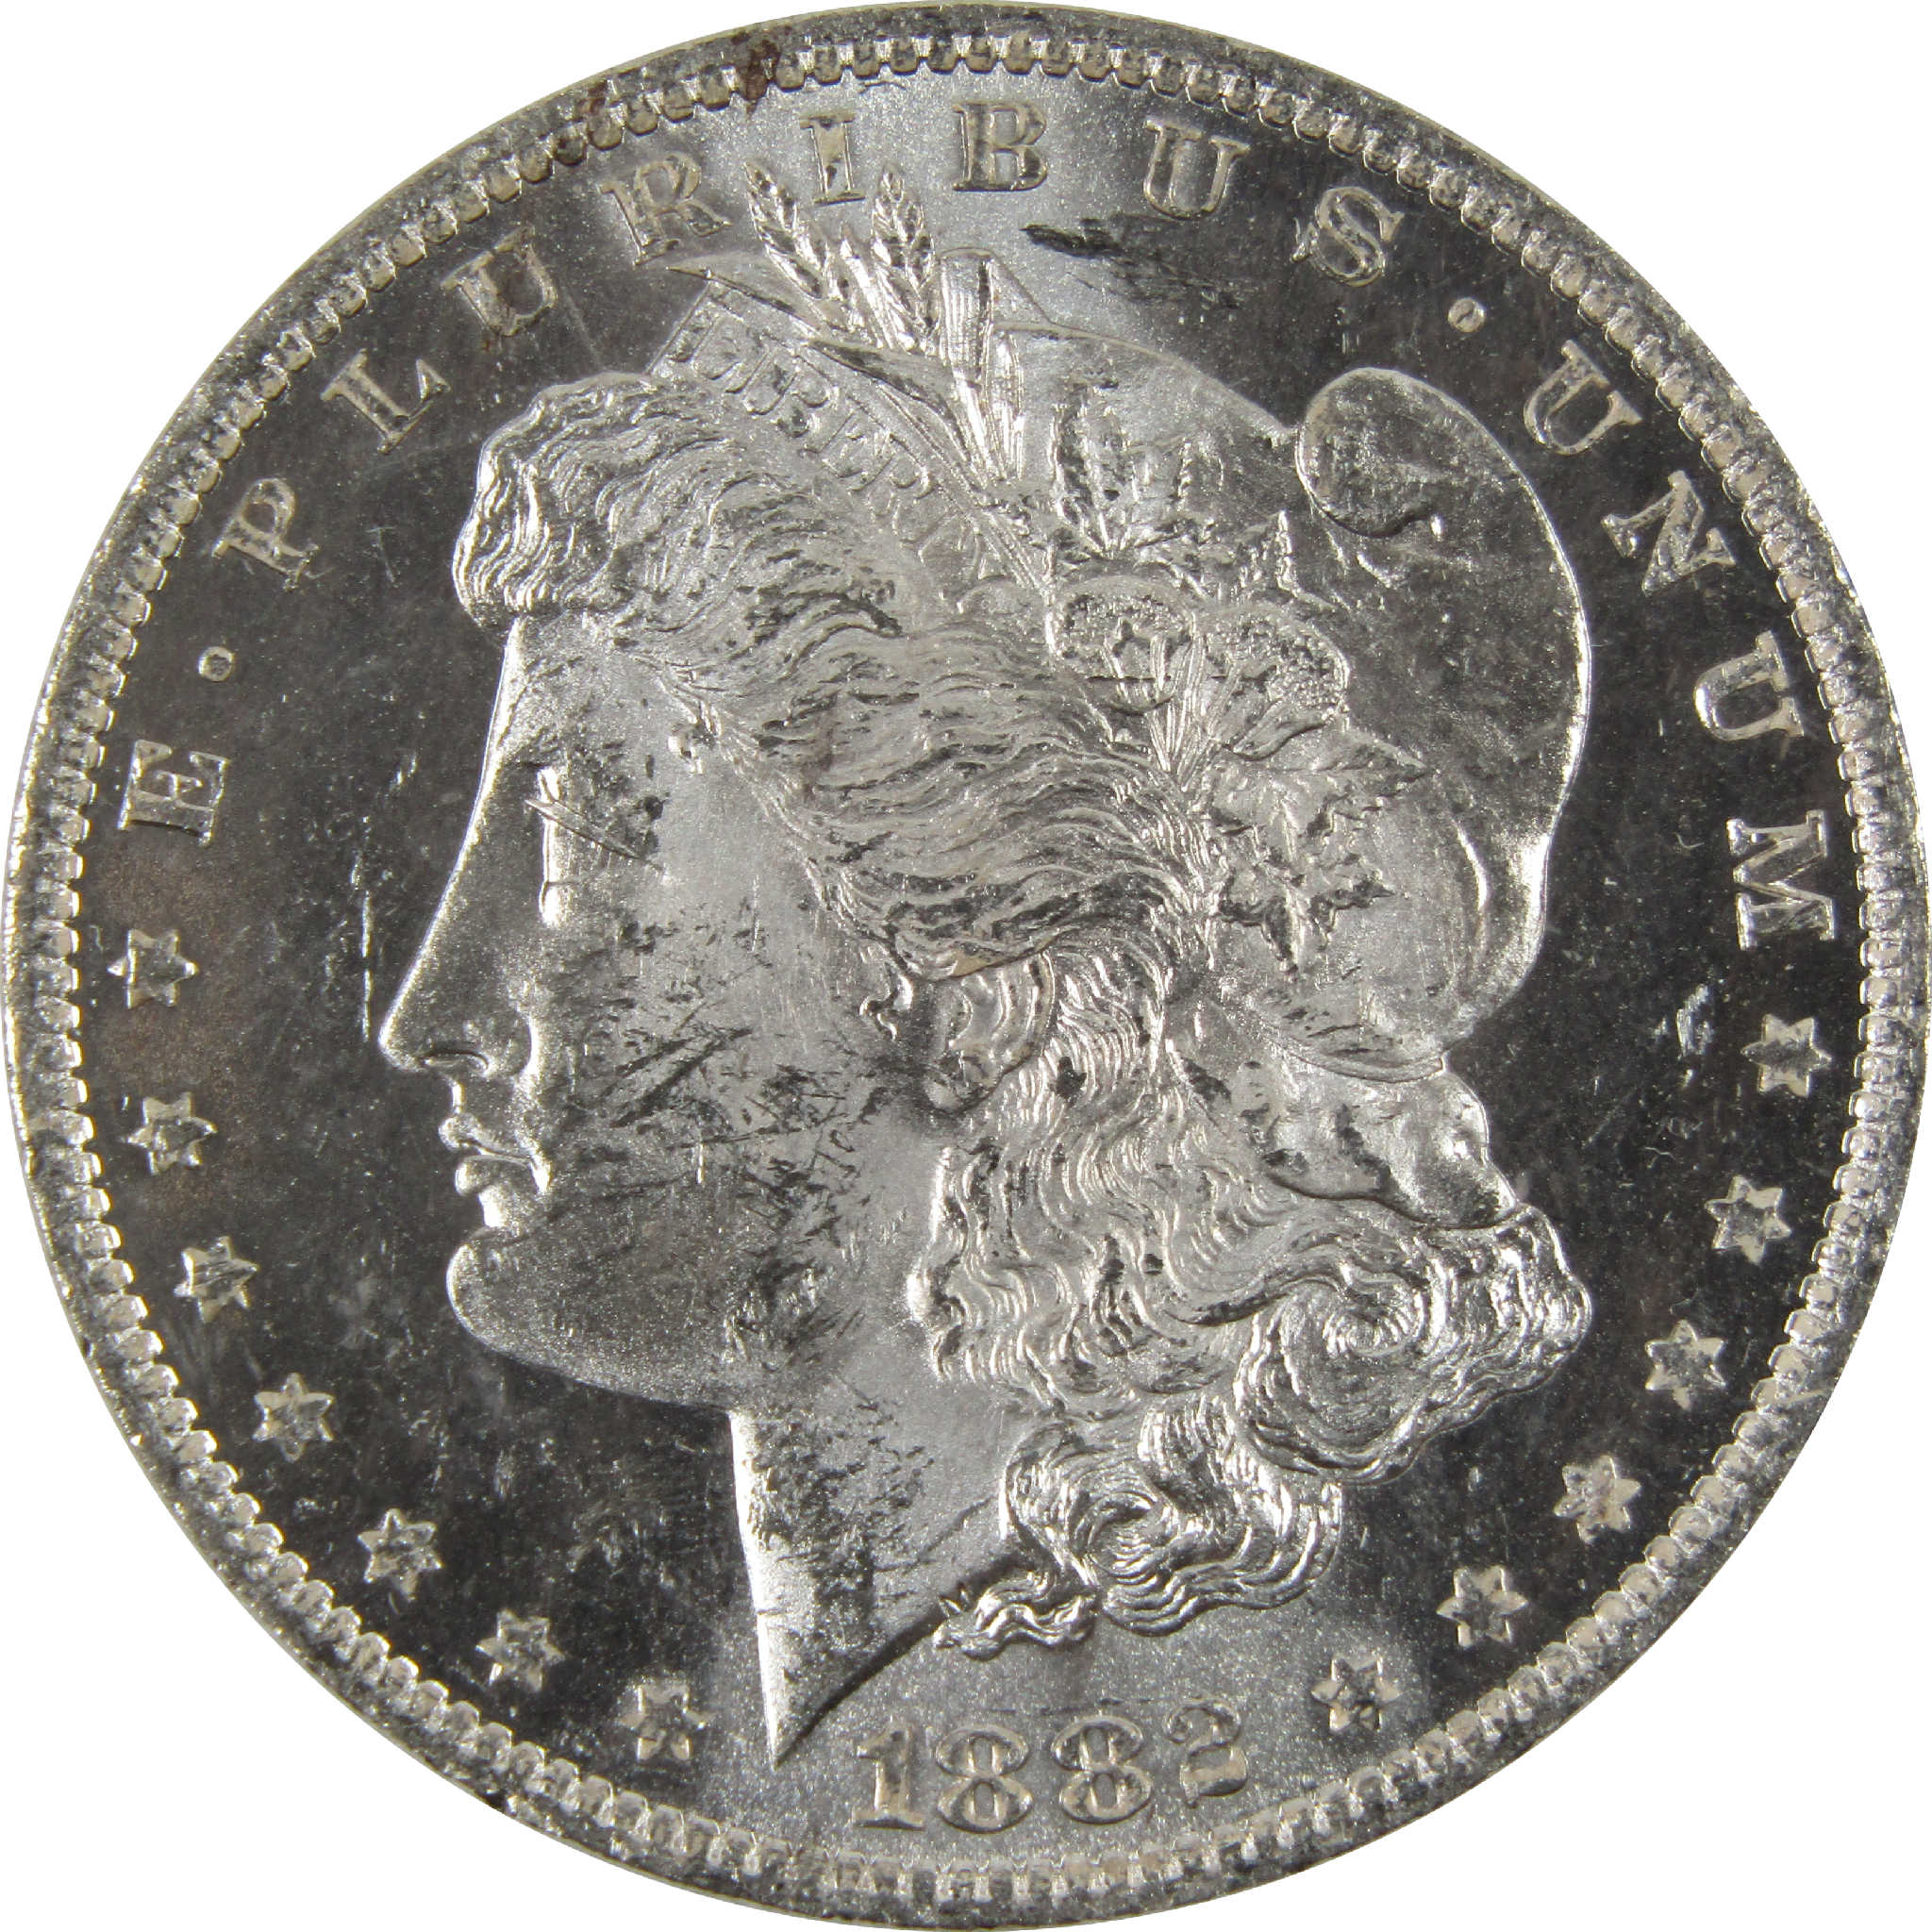 1882 O Morgan Dollar BU Uncirculated 90% Silver $1 Coin SKU:I8902 - Morgan coin - Morgan silver dollar - Morgan silver dollar for sale - Profile Coins &amp; Collectibles